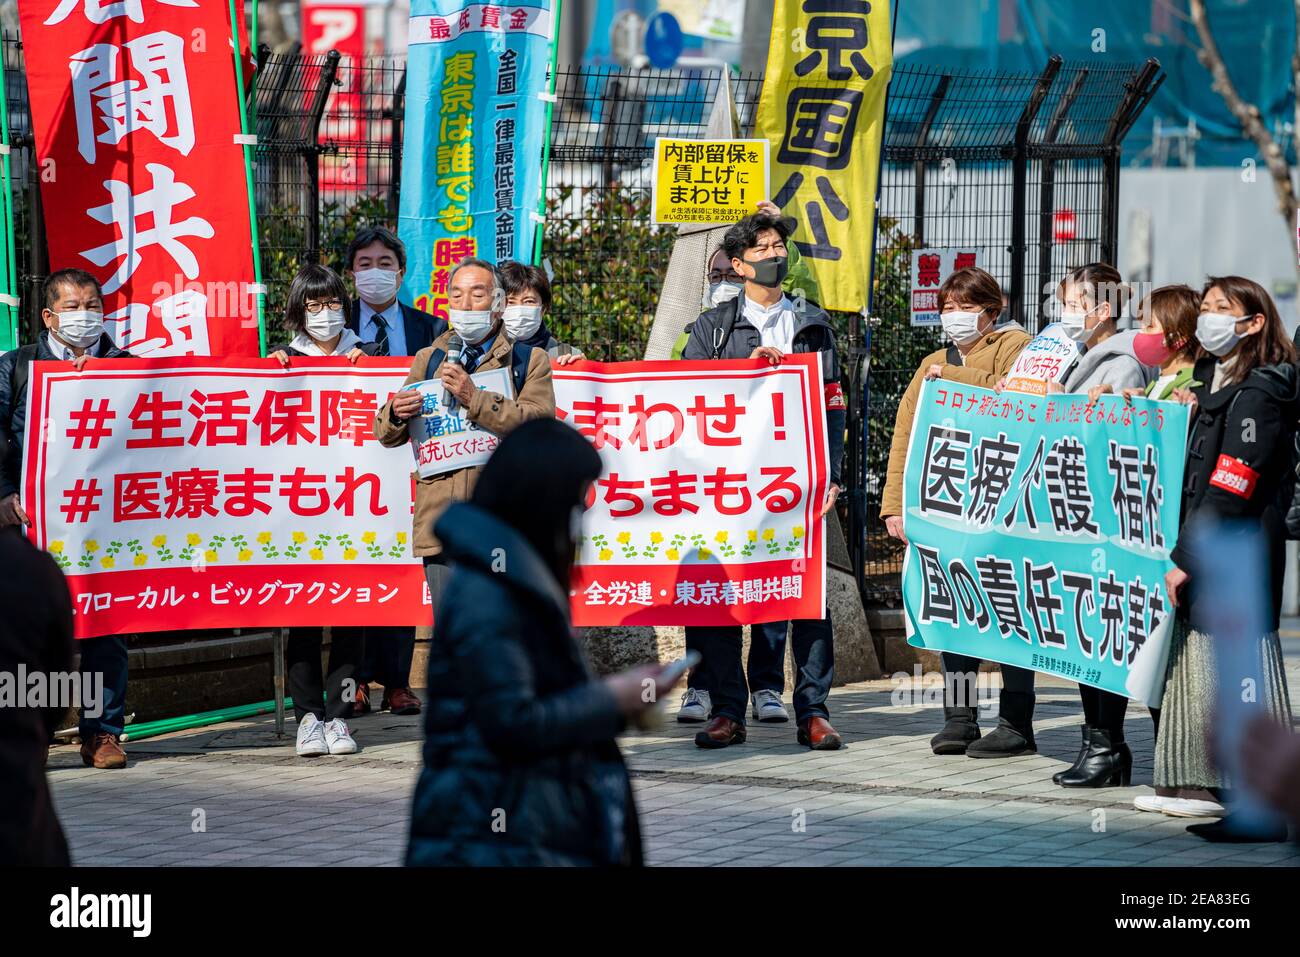 Demonstranten vor dem Shinjuku-Bahnhof in Tokio, Japan, drängen auf ein angemesseneres COVID-19-Pandemienetz für wirtschaftliche Sicherheit und Wohlfahrt der Regierung für kleine und mittlere Unternehmen, Freiberufler und Unternehmer. Demonstration von Mitgliedern der japanischen Föderation der Co-op-Gewerkschaften und der japanischen Föderation der Gewerkschaften für medizinische Arbeiter. Stockfoto